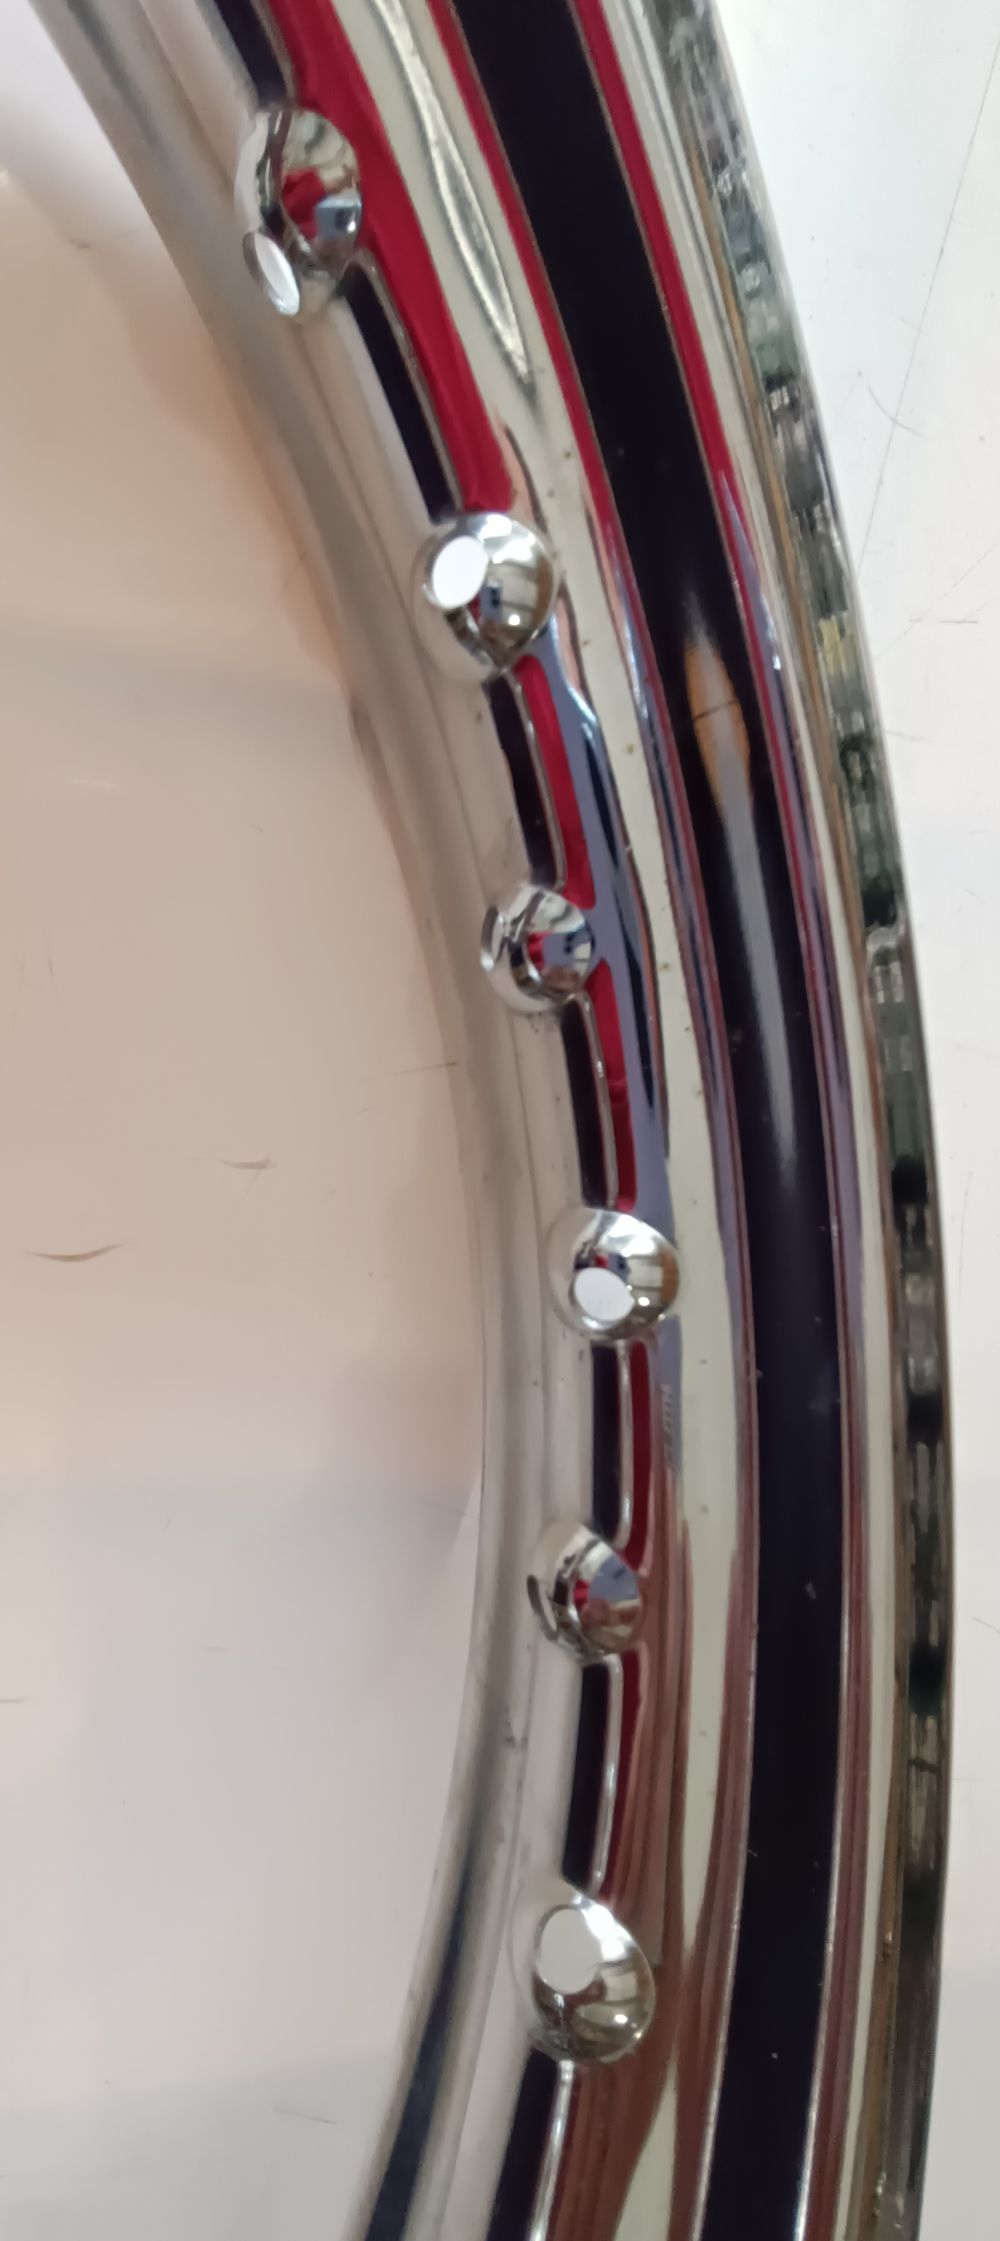 cerchio posteriore radaelli 18 x 1,85 cagiva wsxt - aletta rossa - leggeri segni di movimentazione -